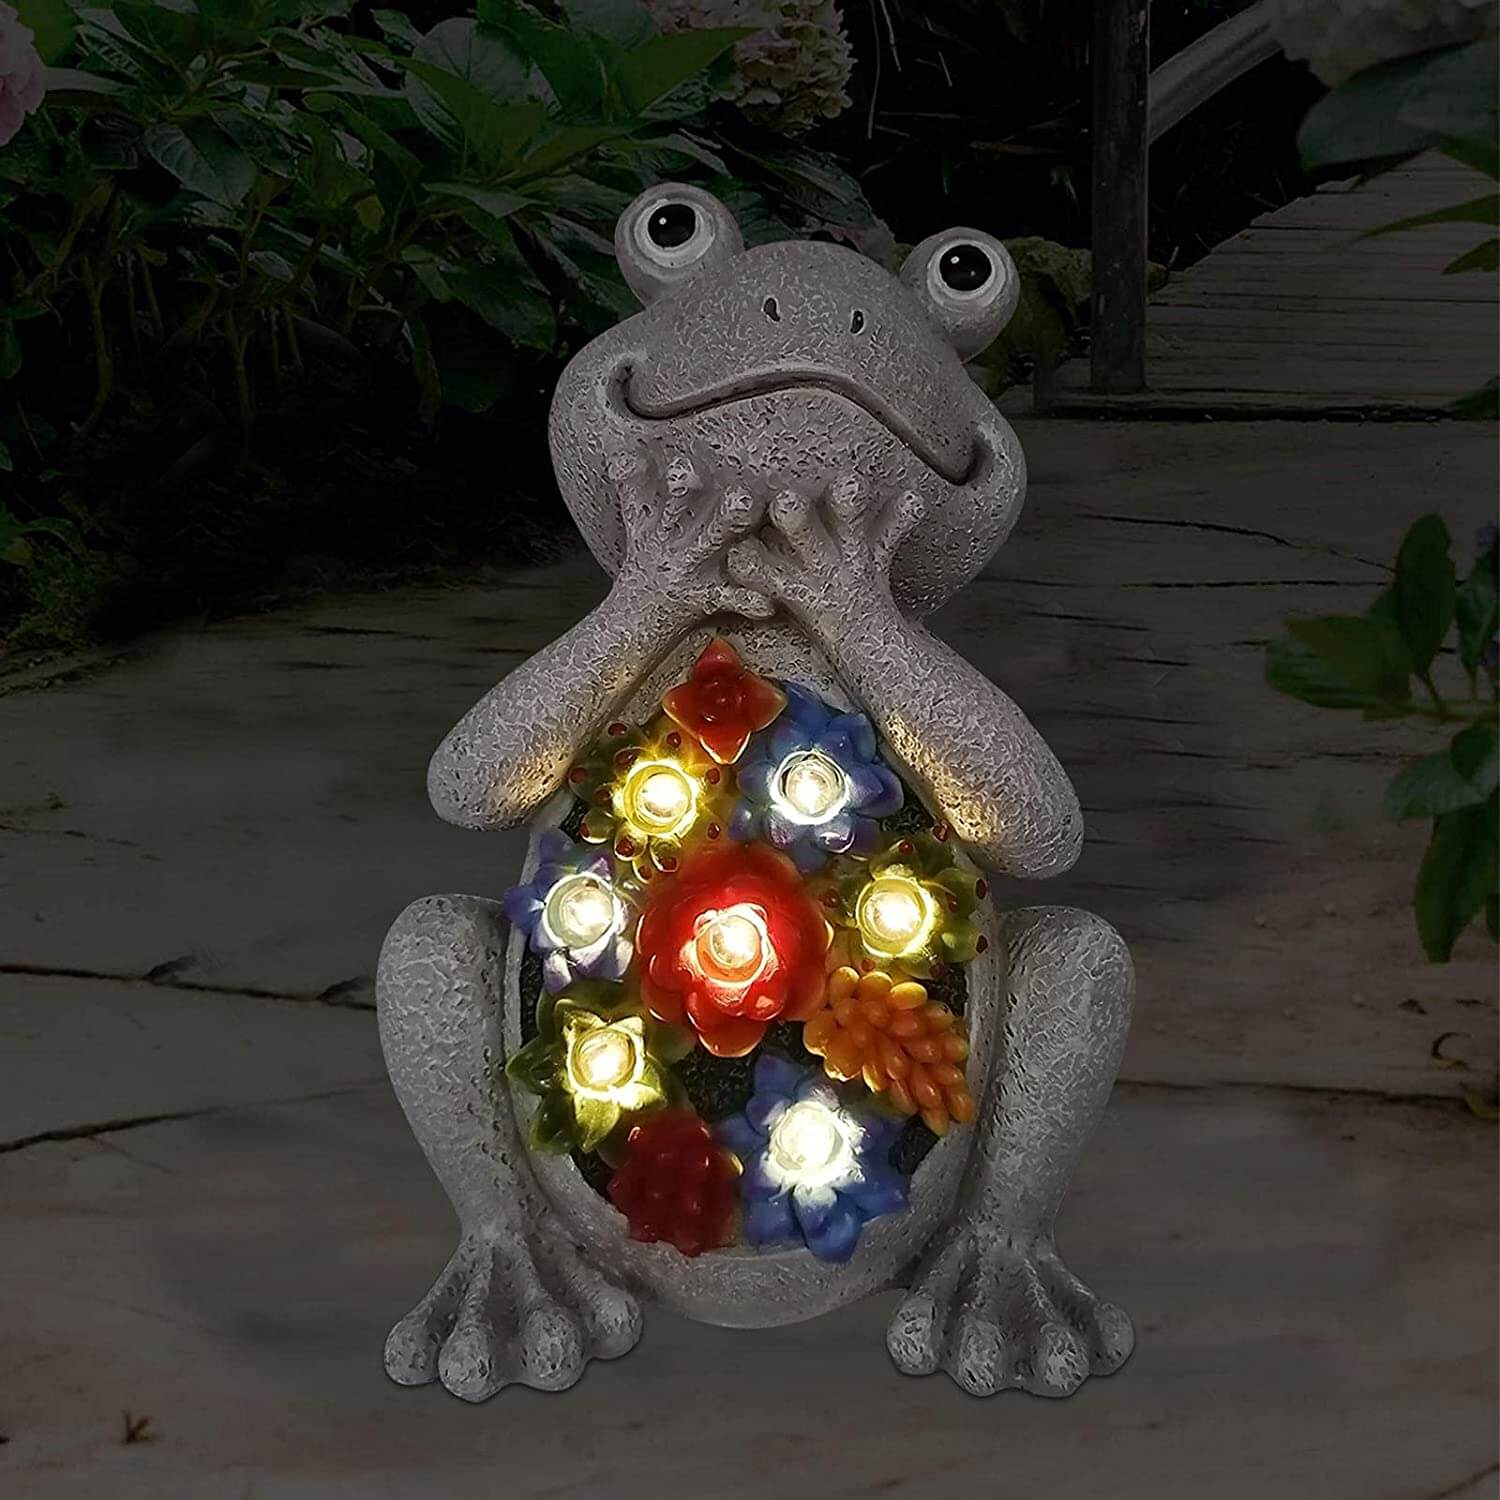 Goodeco Solar Garden Statue Frog Ornament